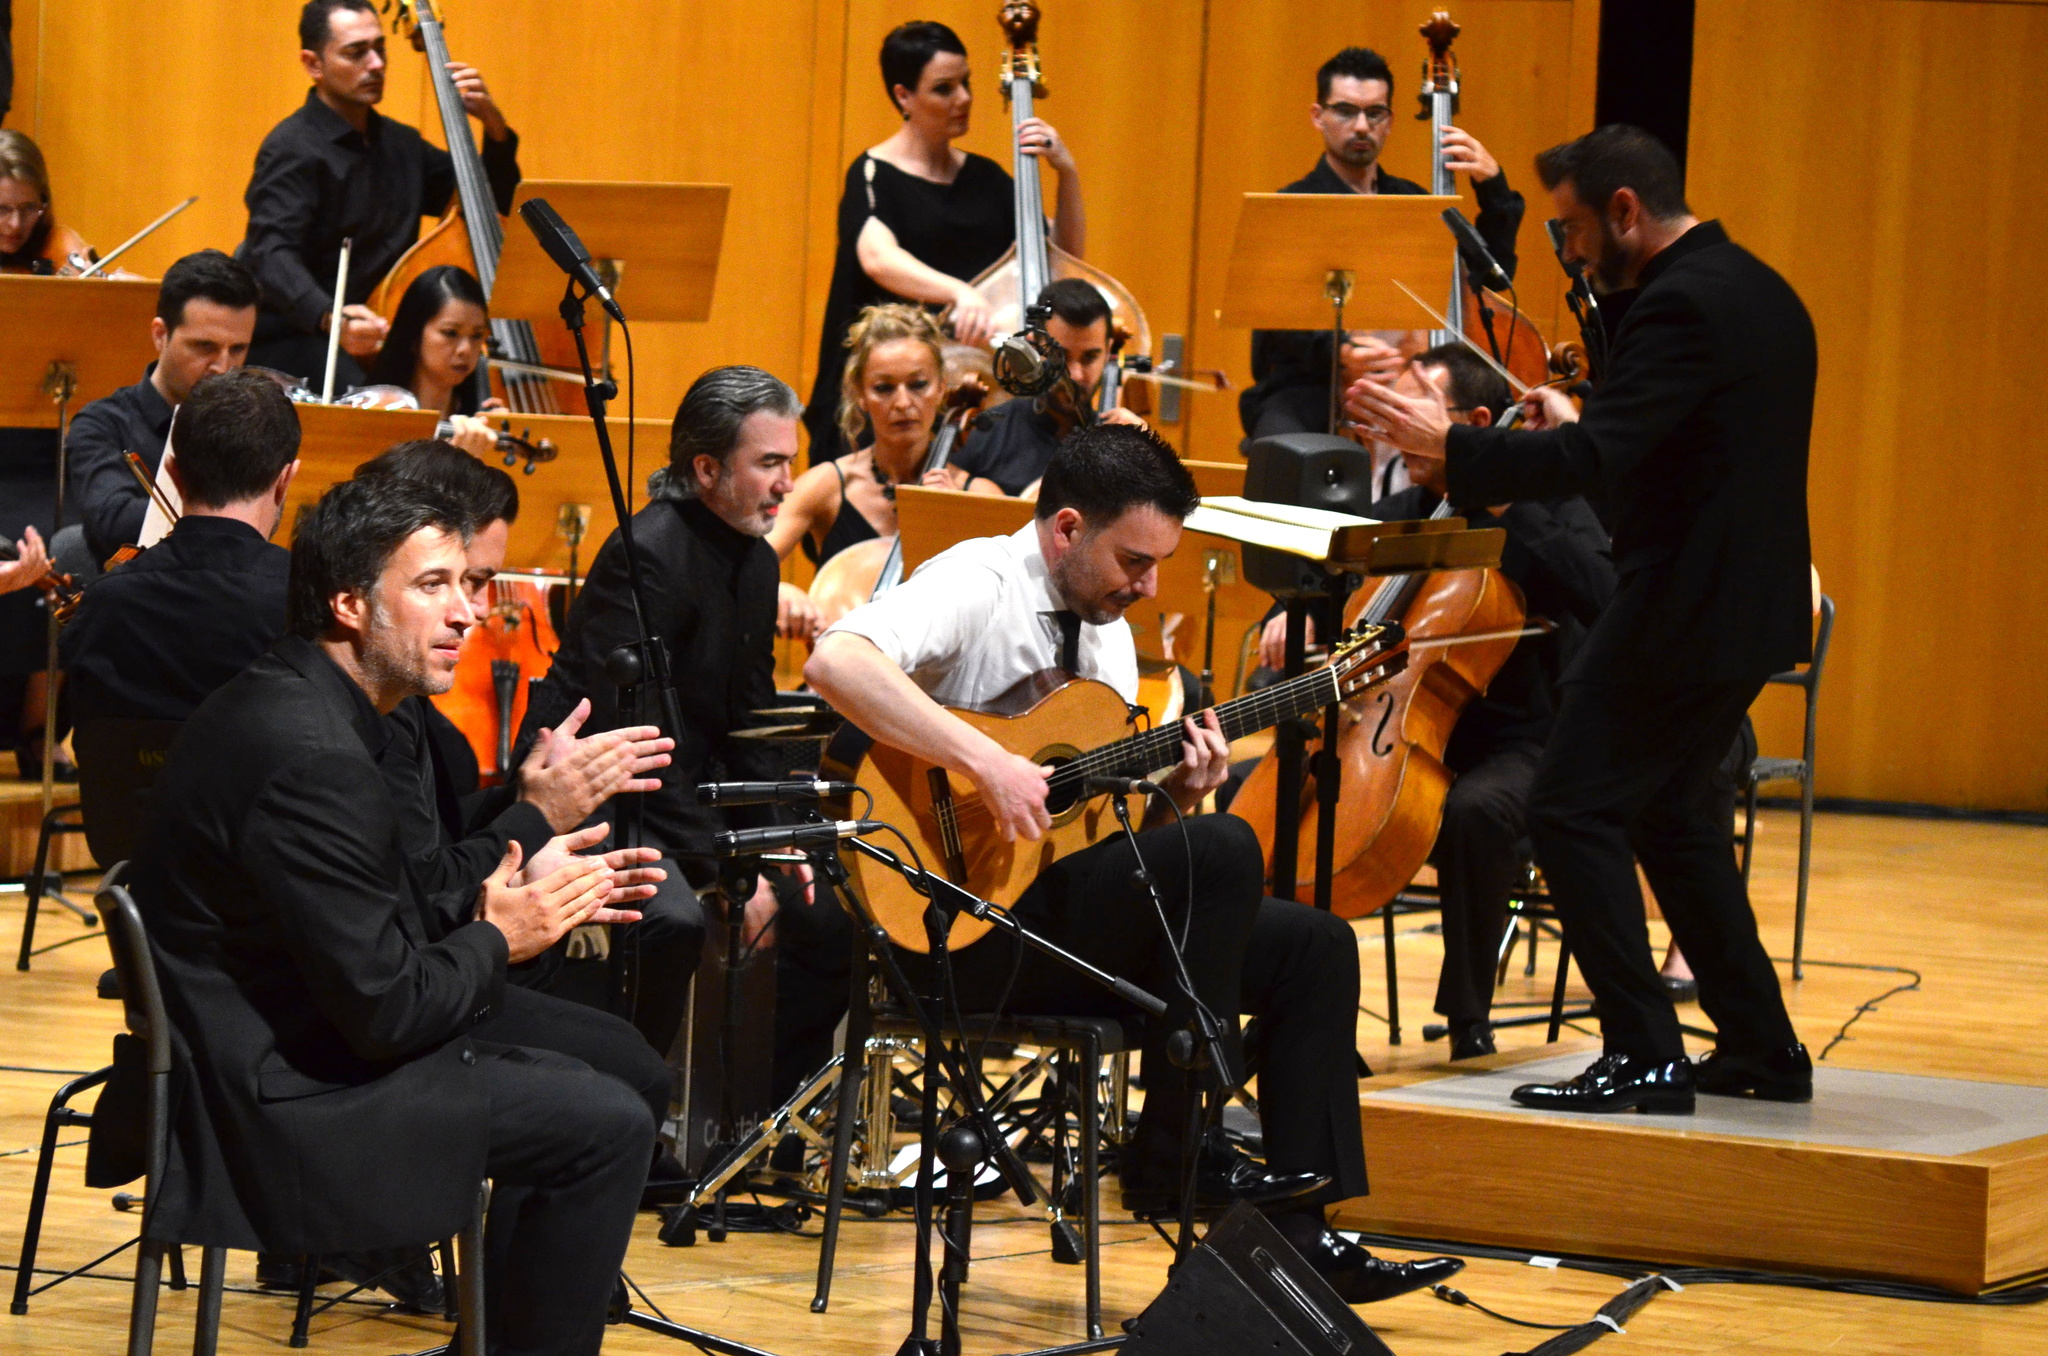 magen de Carlos Piñana y la Orquesta Sinfónica de la Región de Murcia en la presentación de 'Rubato' en el Auditorio regional Víctor Villegas.